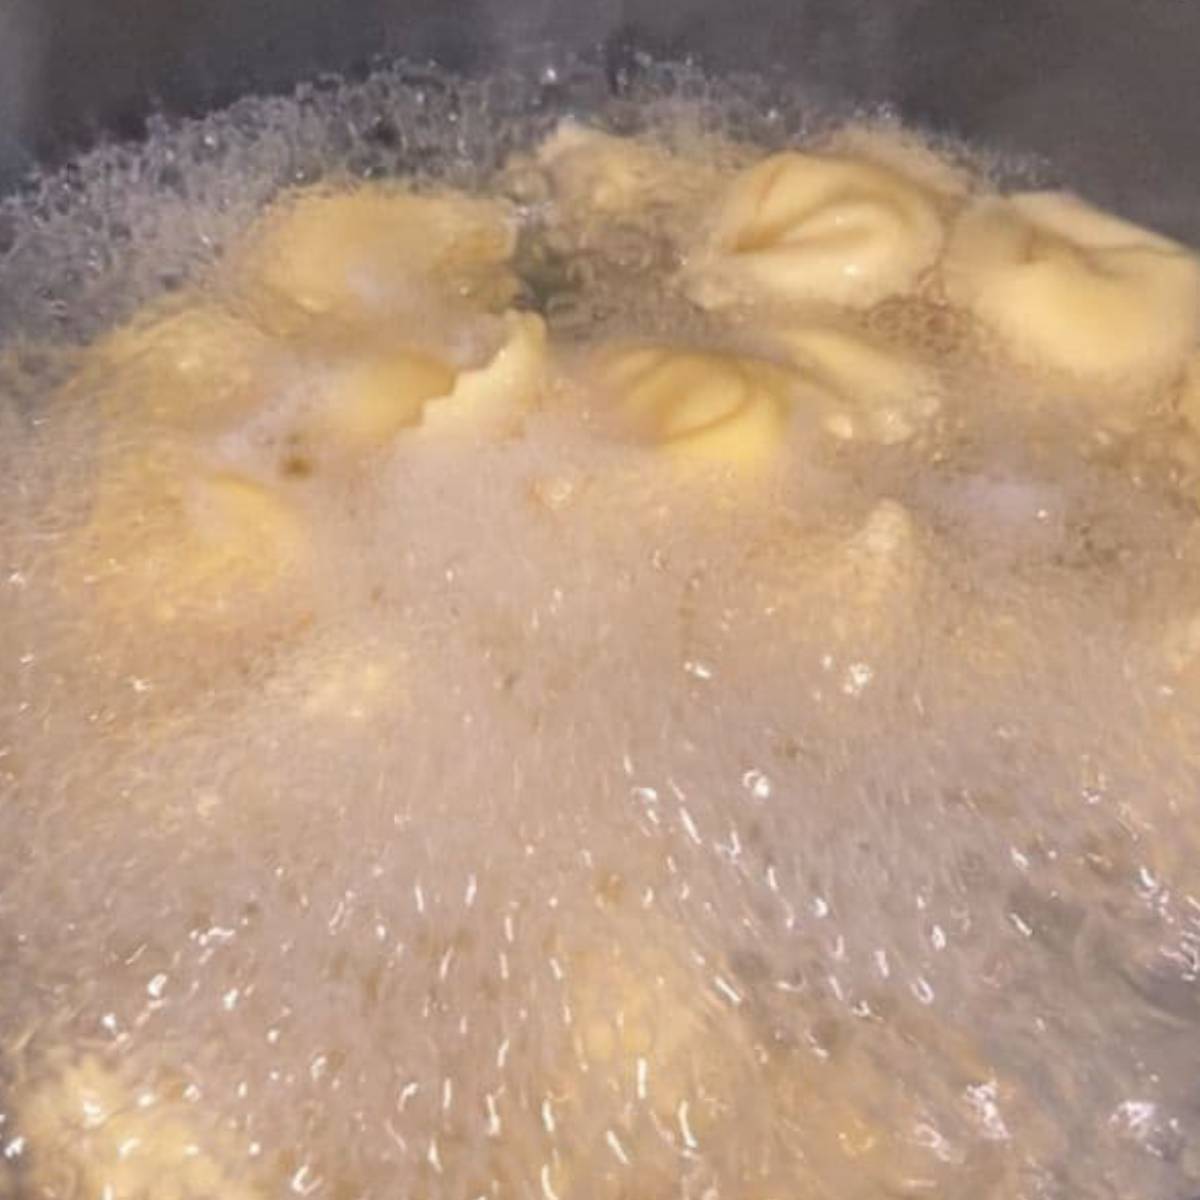 Tortellini boiling in pot.